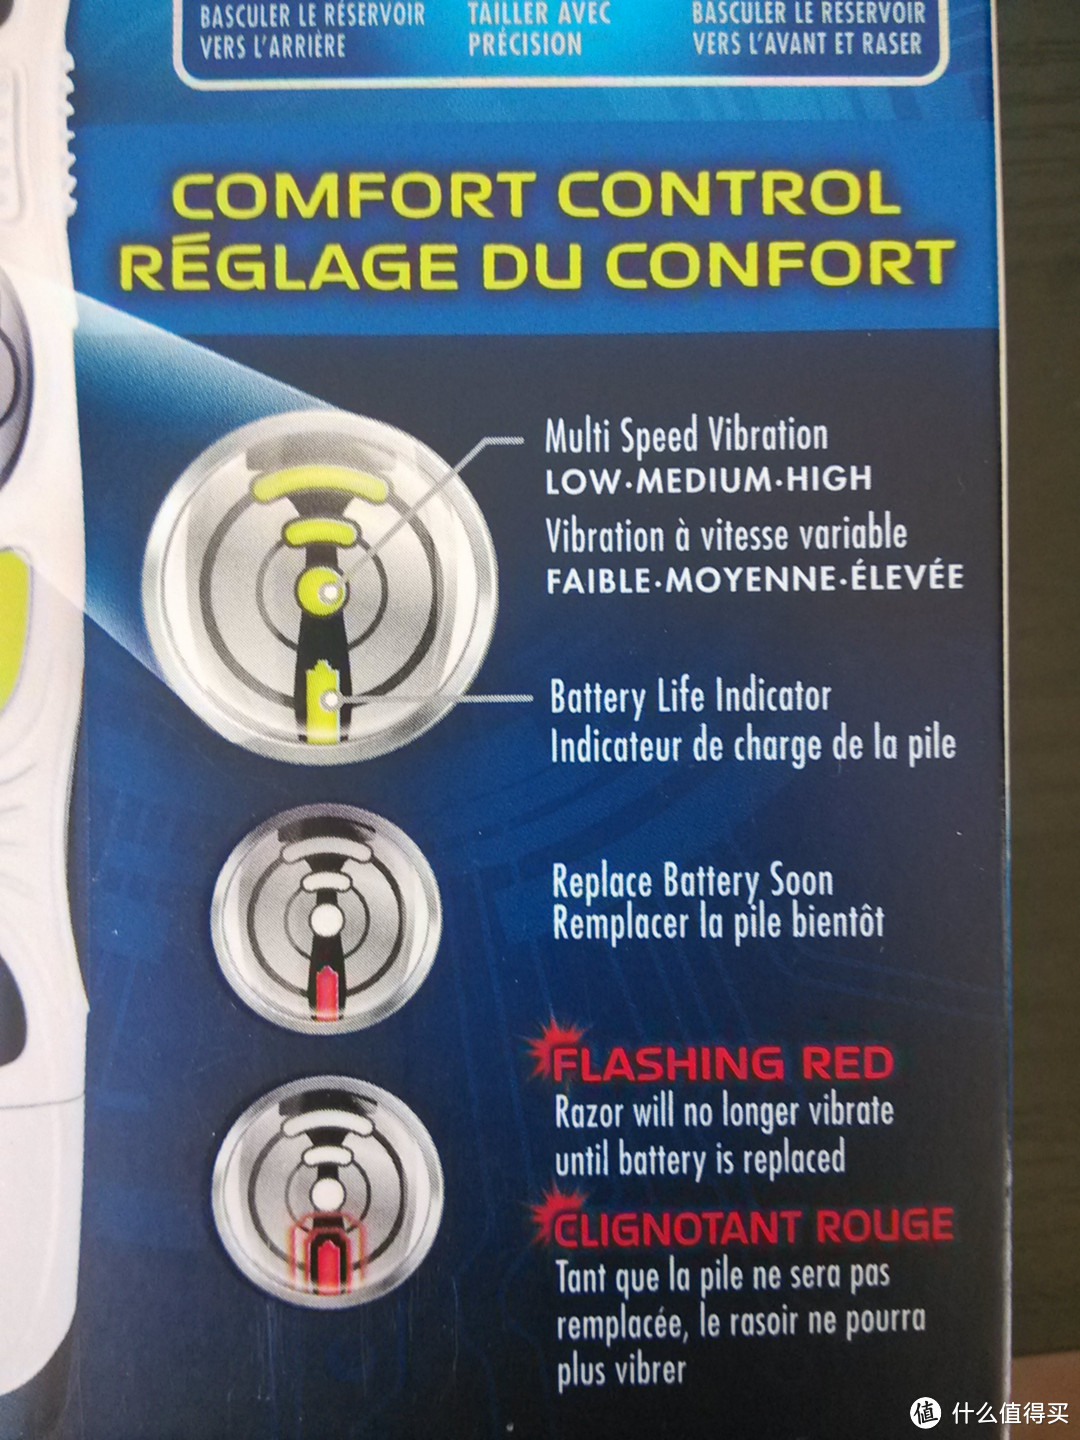 电池指示灯在低电量时会变红，提示尽快换电池，闪烁则代表换电池之前无法继续使用